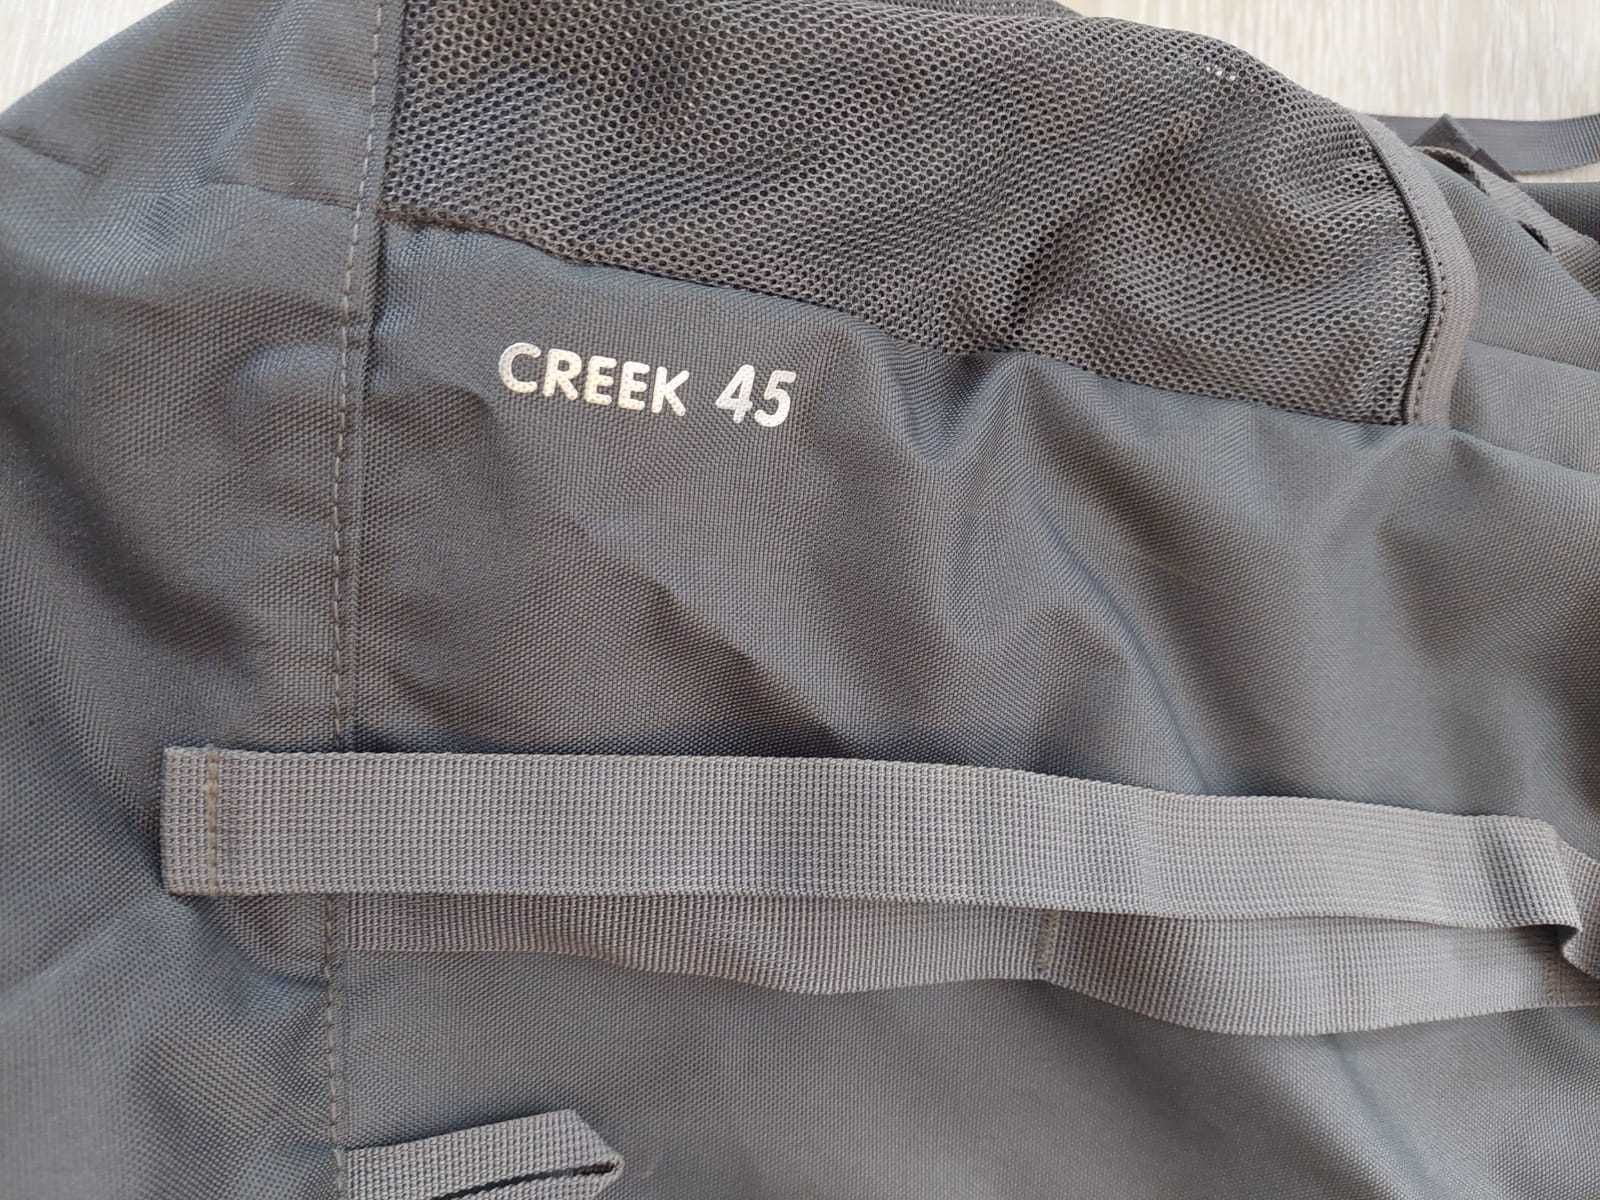 Трекинговый рюкзак OUTVENTURE Creek 45